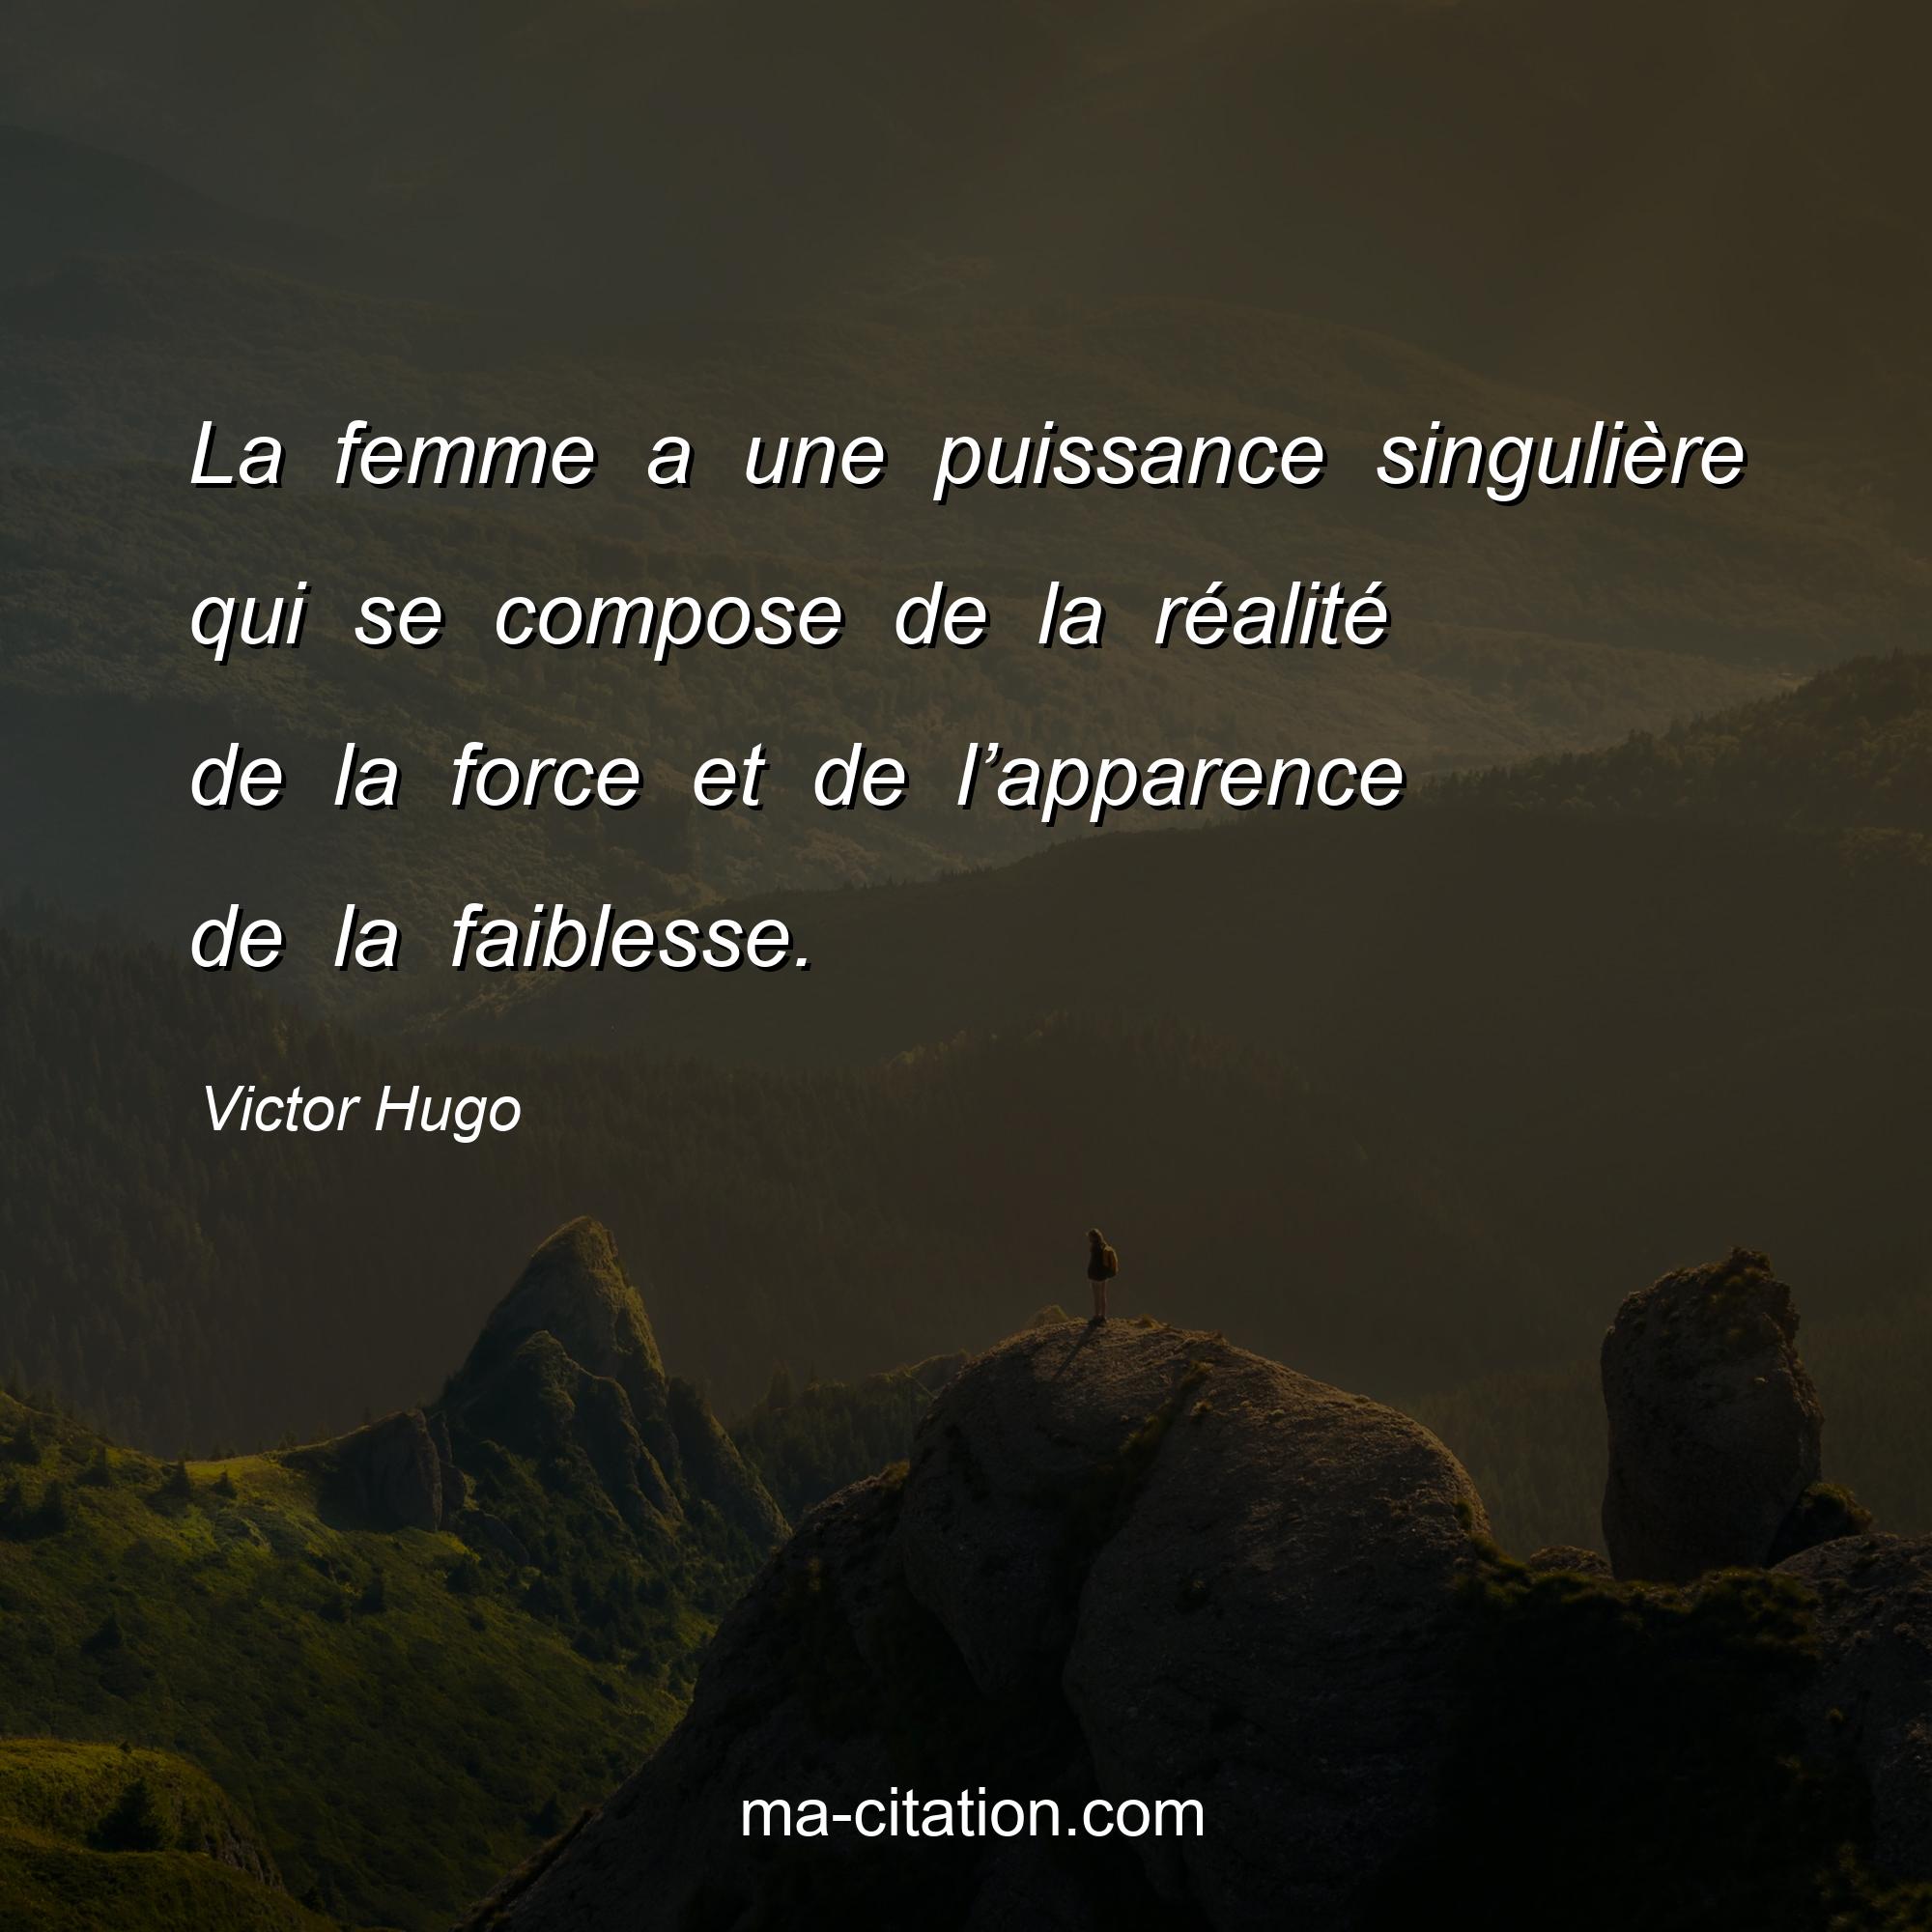 Victor Hugo : La femme a une puissance singulière qui se compose de la réalité de la force et de l’apparence de la faiblesse.